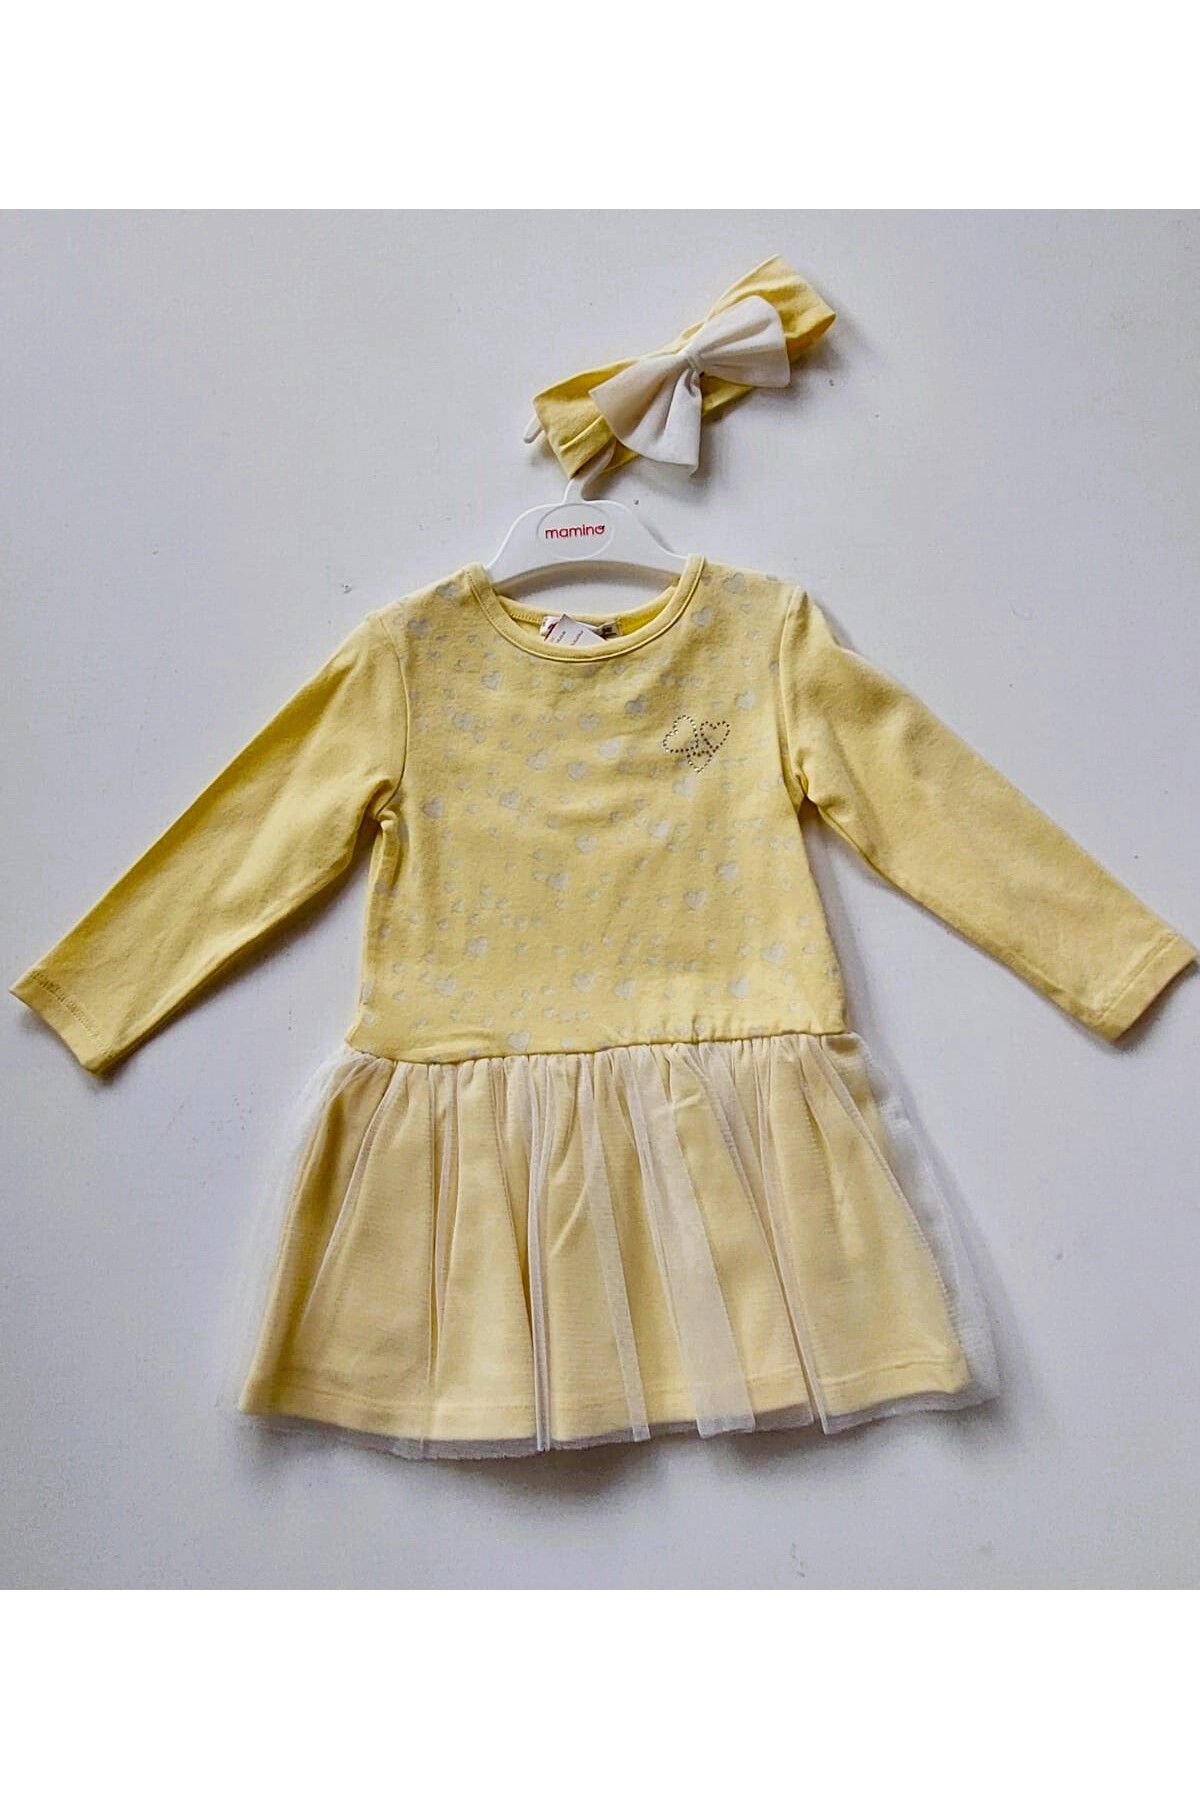 Mamino Küçük Kız Çocuk Bebek Pamuk Cotton Kalp Desenli Tüllü Etekli Sarı Renk Bandanalı Elbise